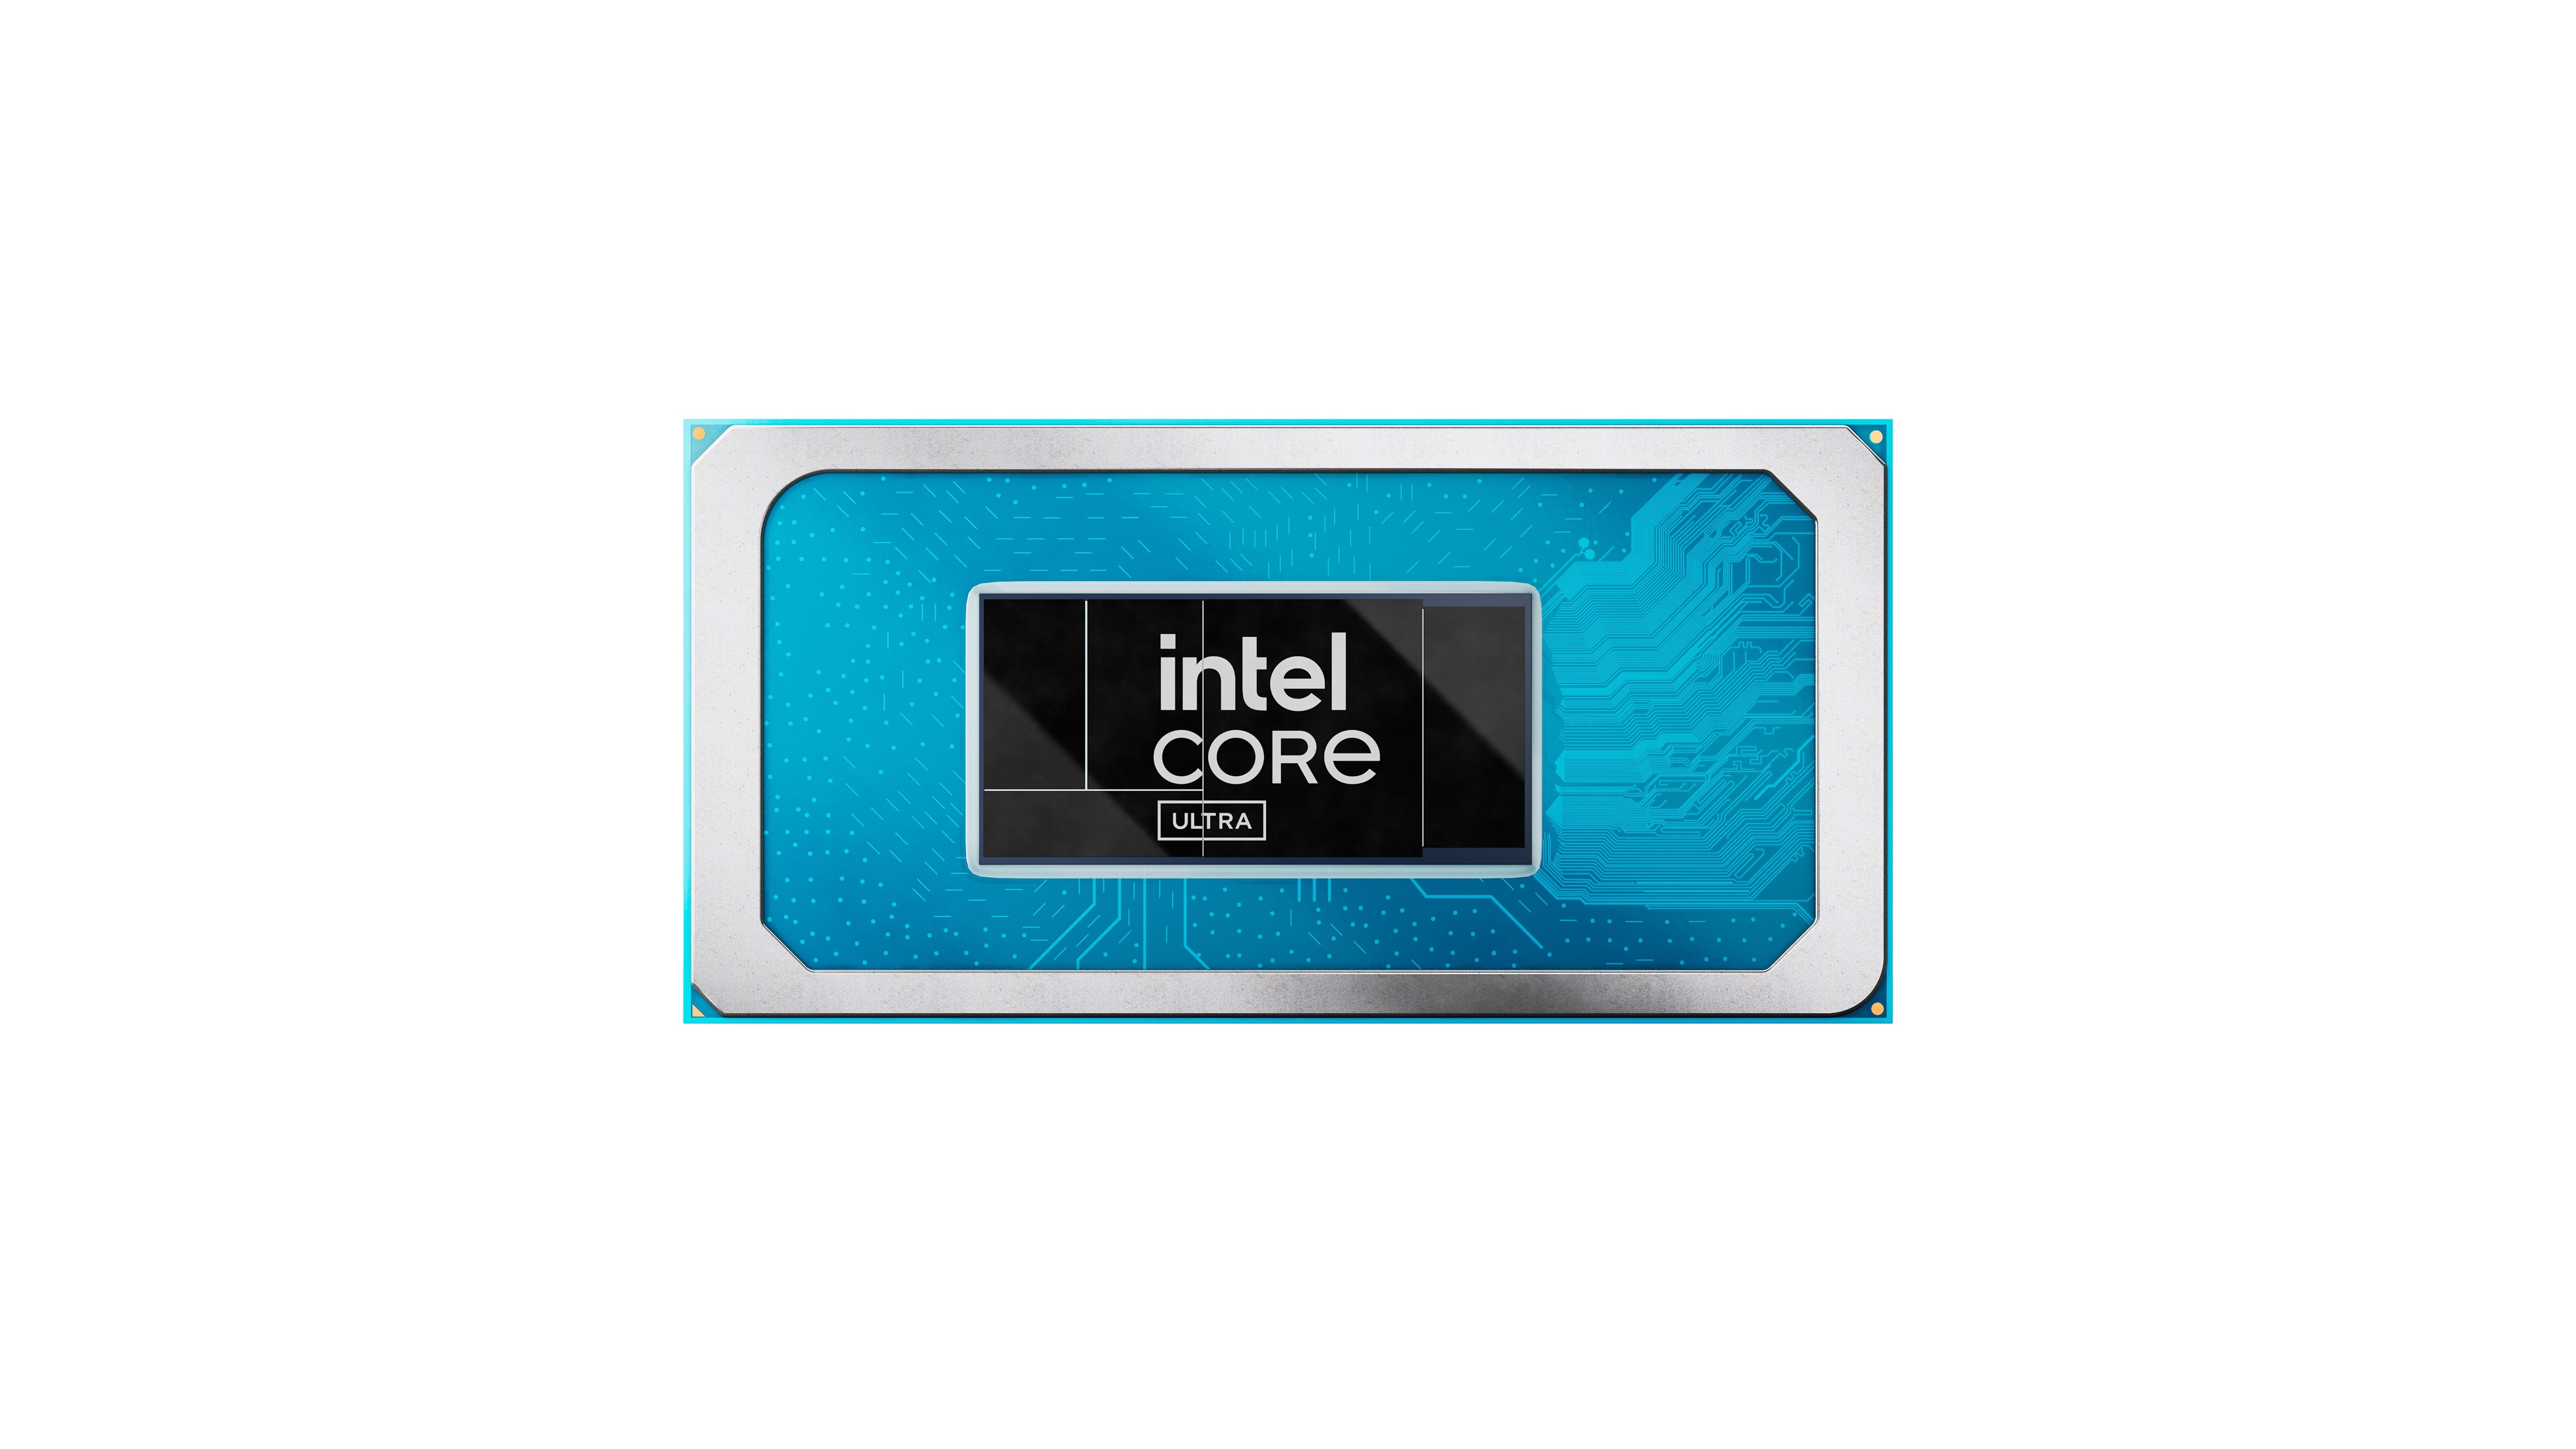 Immagine pubblicata in relazione al seguente contenuto: Intel lancia i processori Core Ultra per i notebook di nuova generazione con AI | Nome immagine: news35119_Intel-Core-Ultra_2.jpg